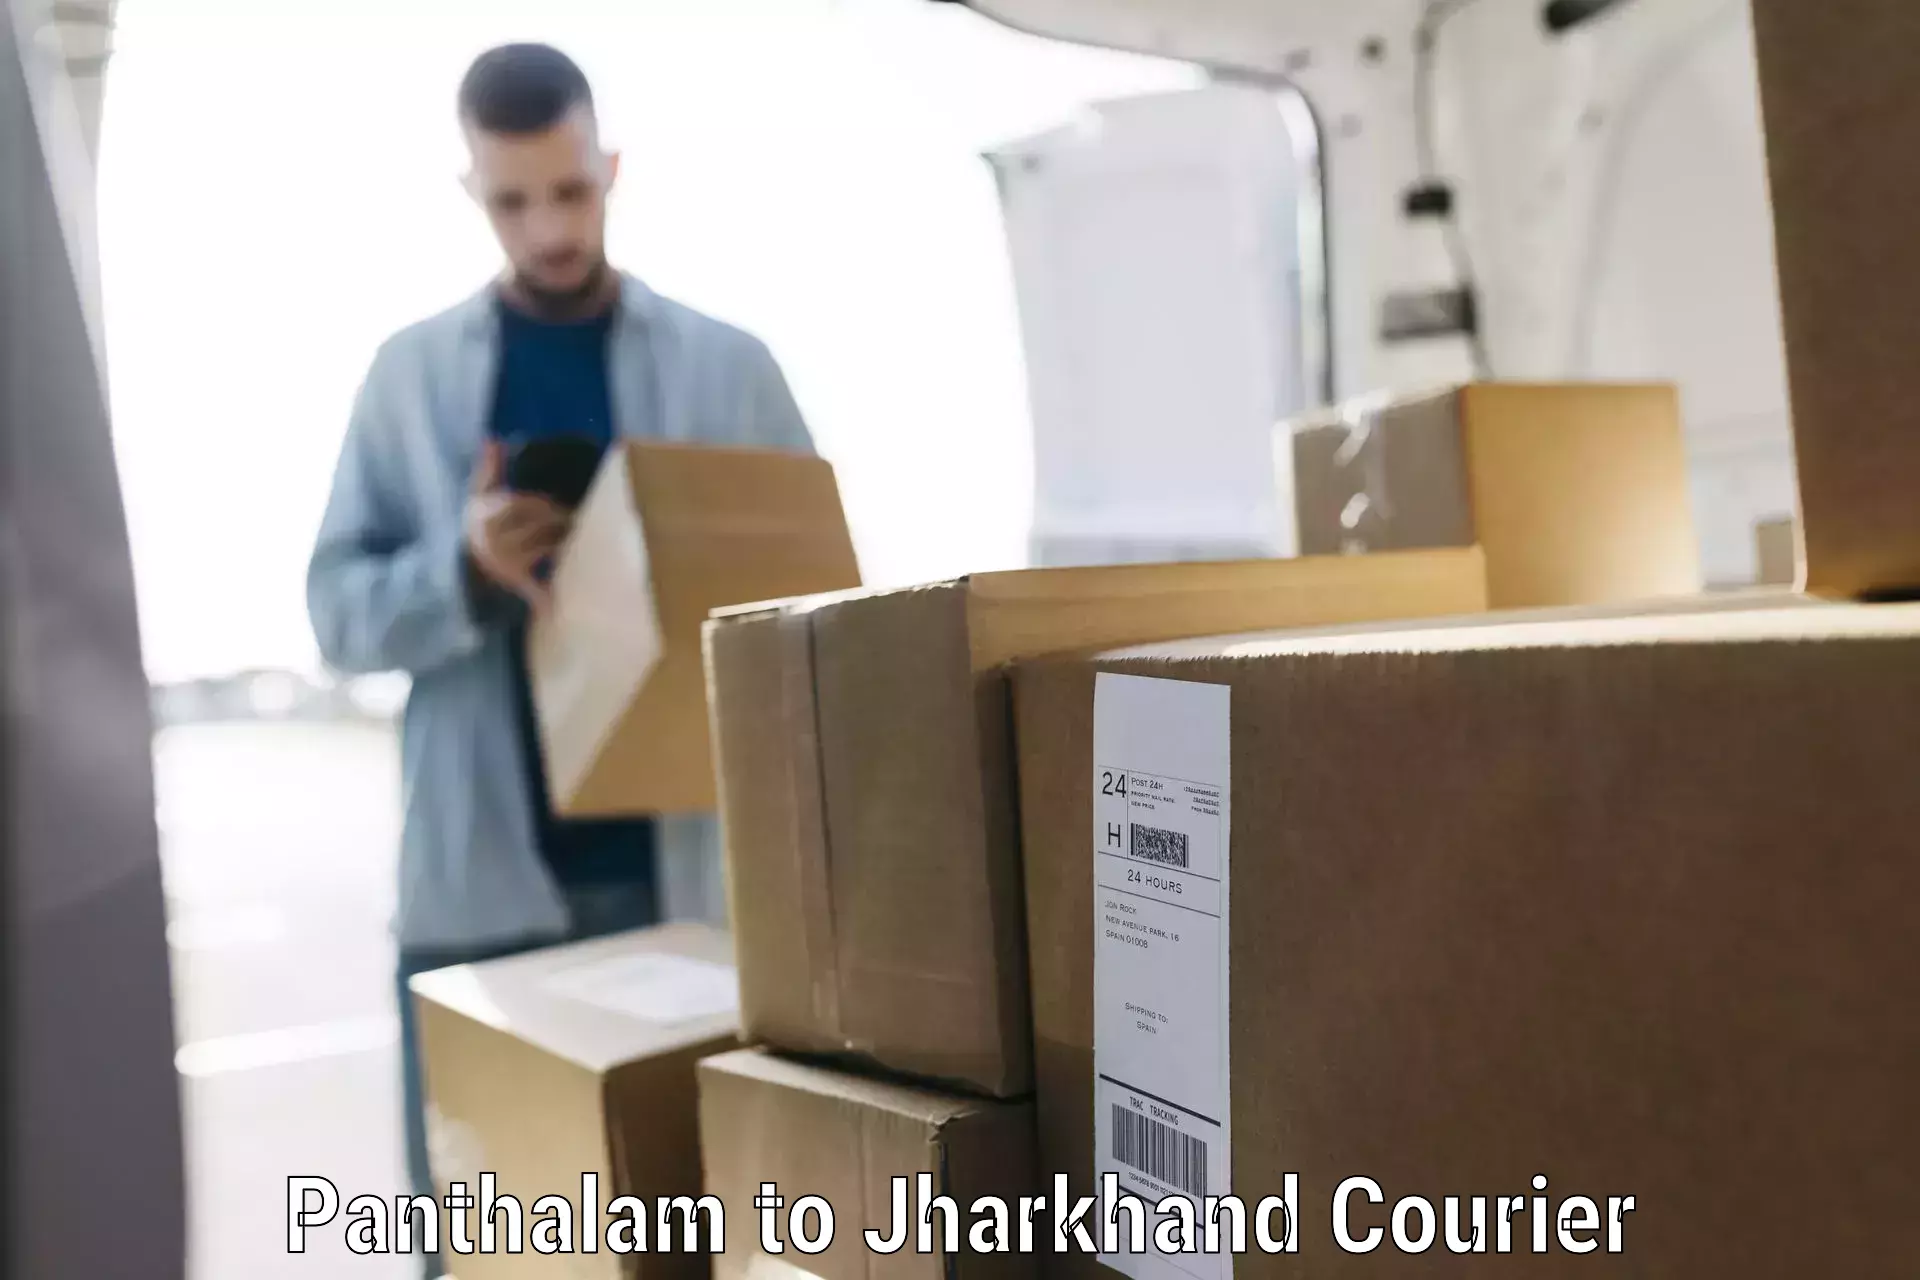 Door-to-door baggage service Panthalam to Jharkhand